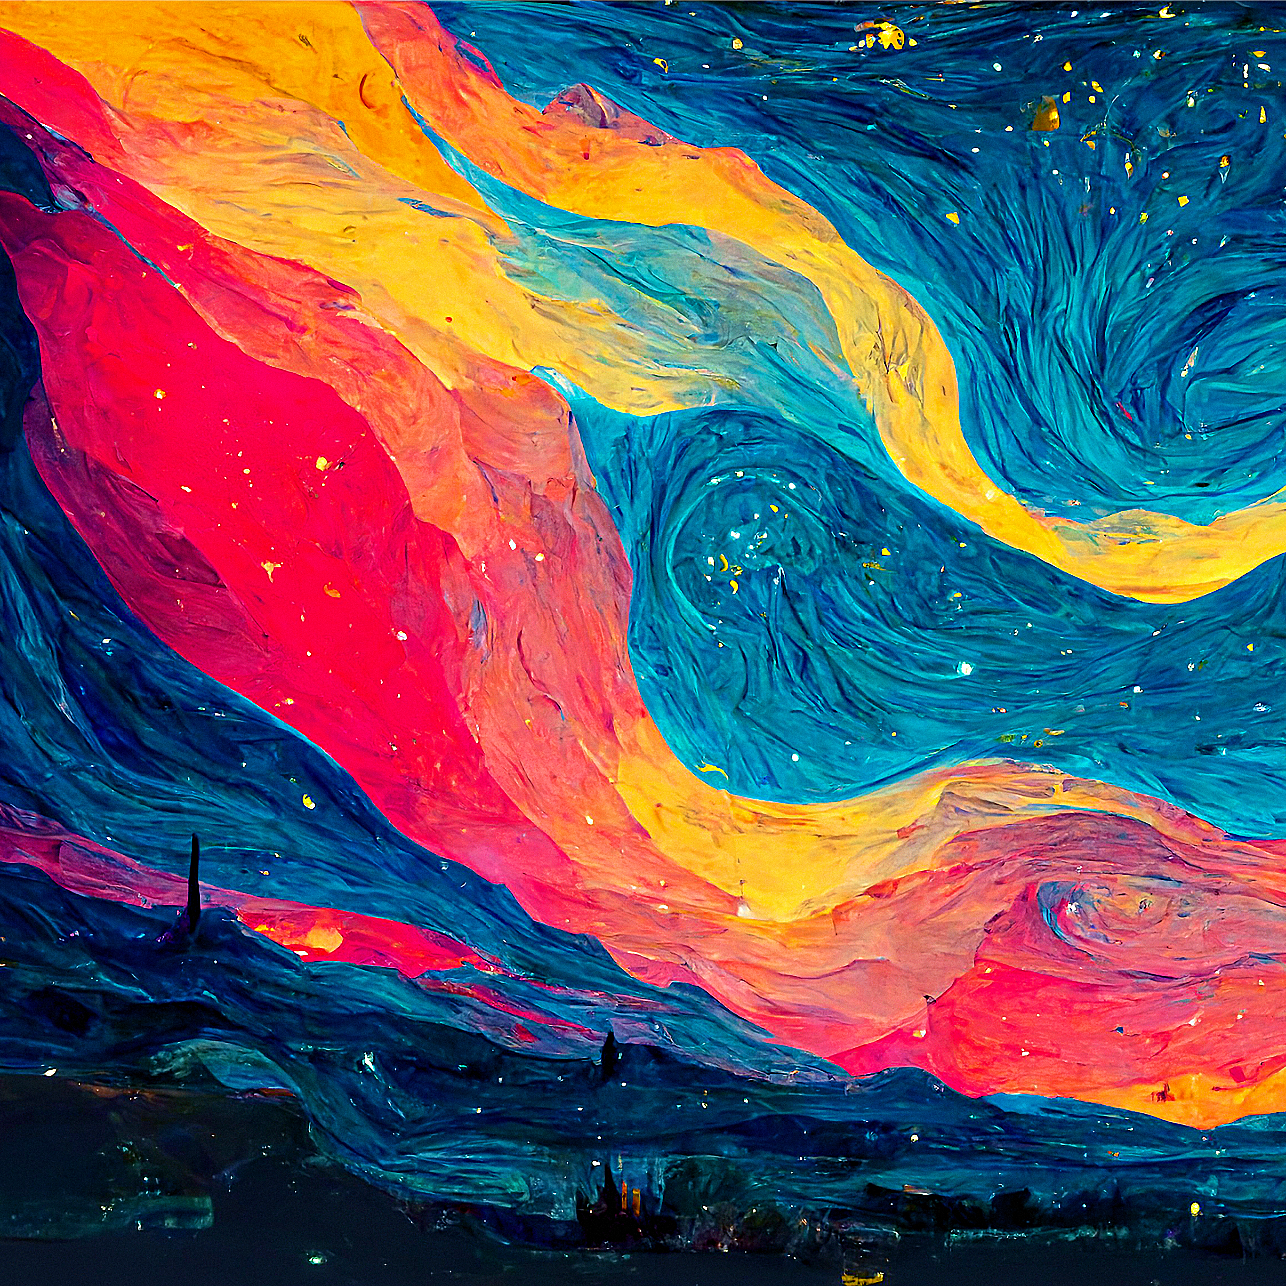 Apple’s Big Sur meets Van Gogh’s Starry Night.